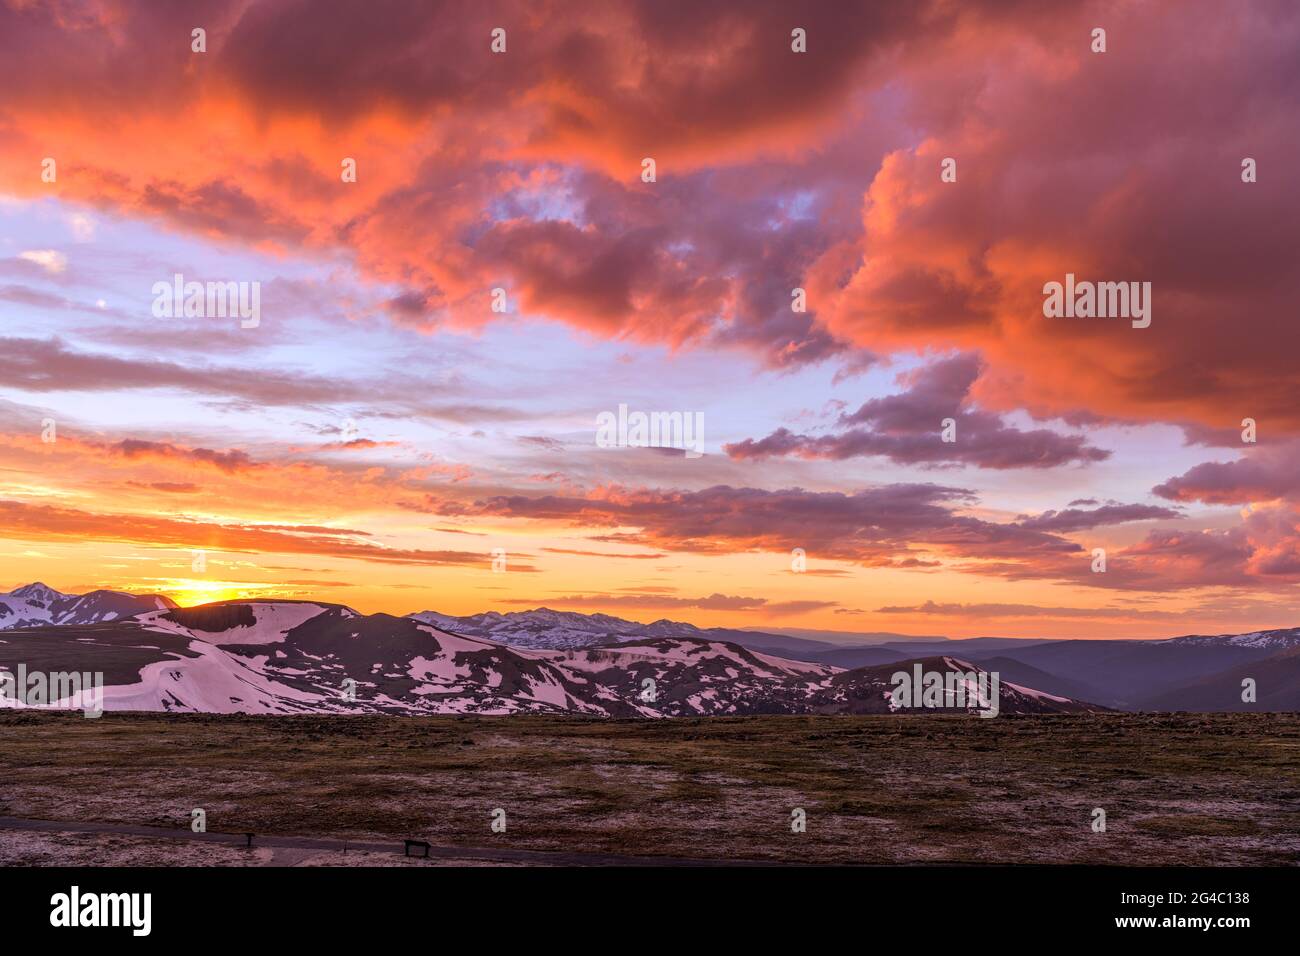 Tramonto primaverile alla cima delle Montagne Rocciose - una vista grandangolare delle colorate nuvole del tramonto primaverile sulle cime innevate del Continental divide, RMNP, CO. Foto Stock